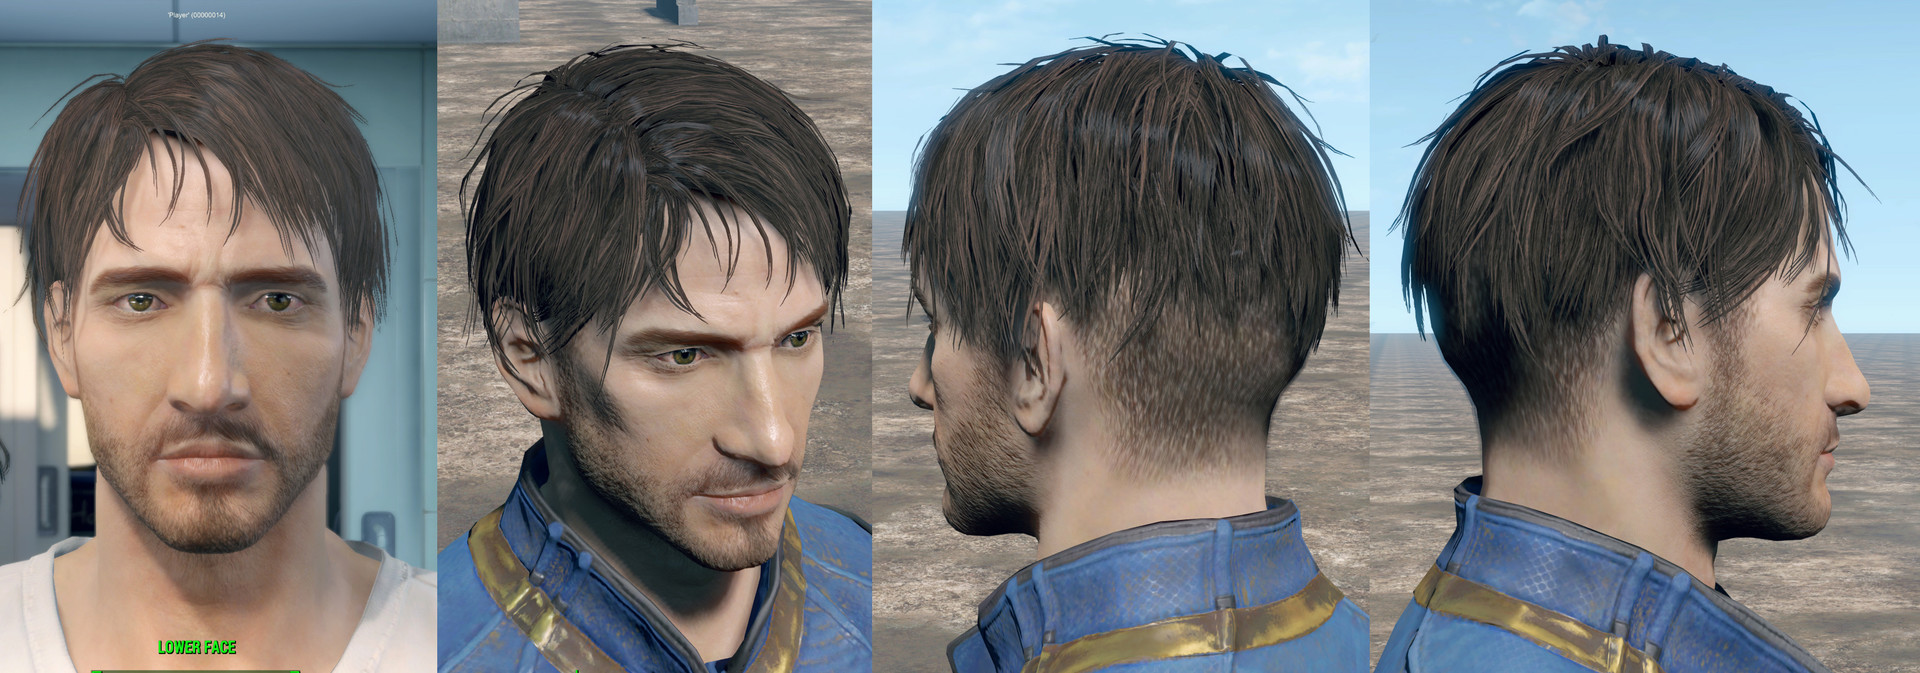 Fallout 4 мужские лица фото 54